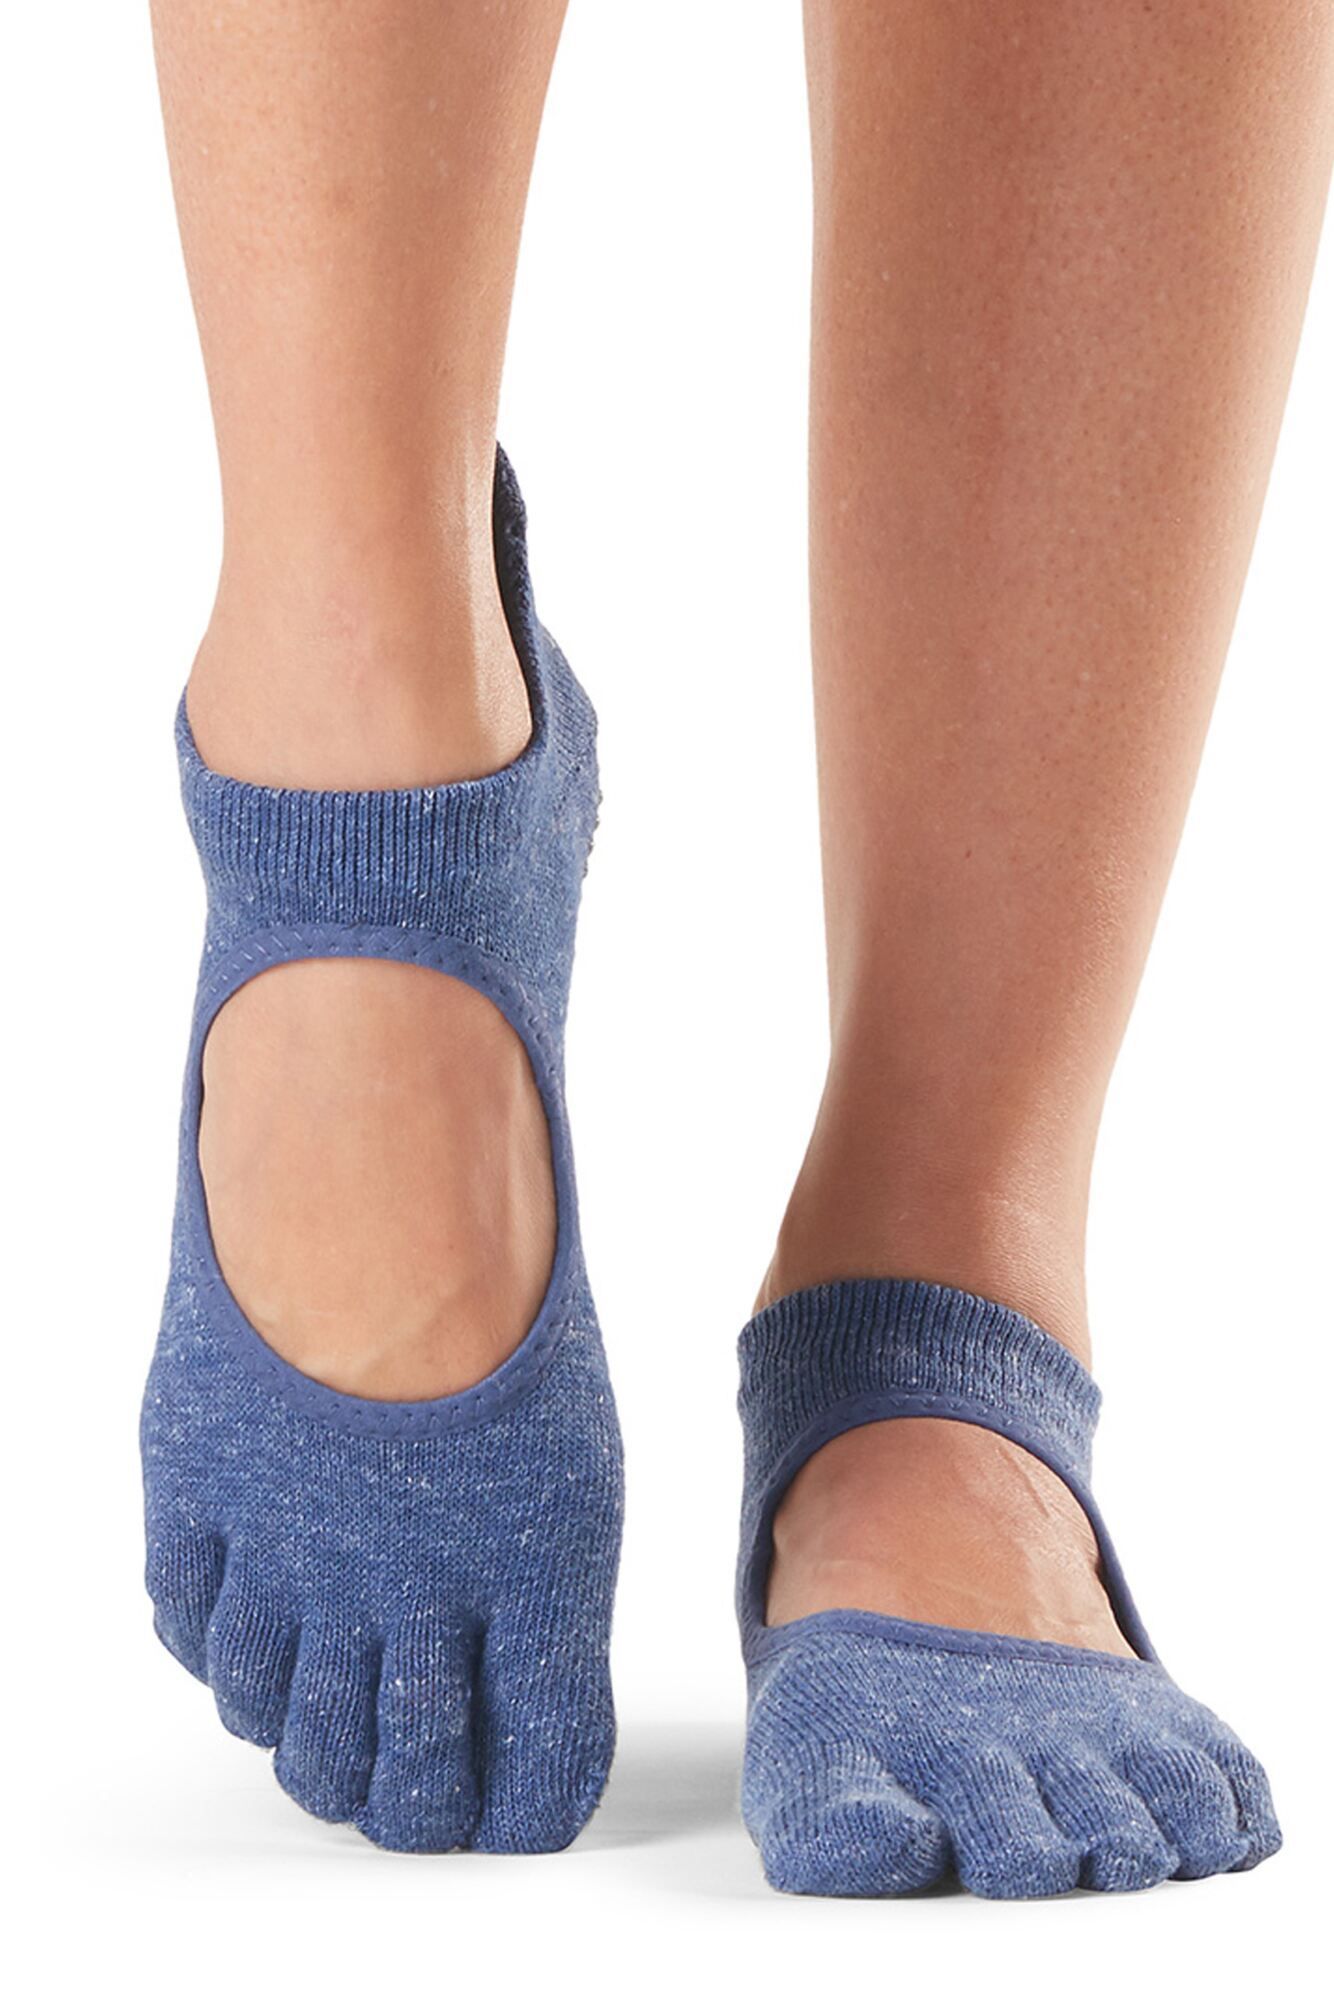 JTAISC Yoga Socks for Women Girls Workout Socks Toeless Training Dance Leg Warmers 